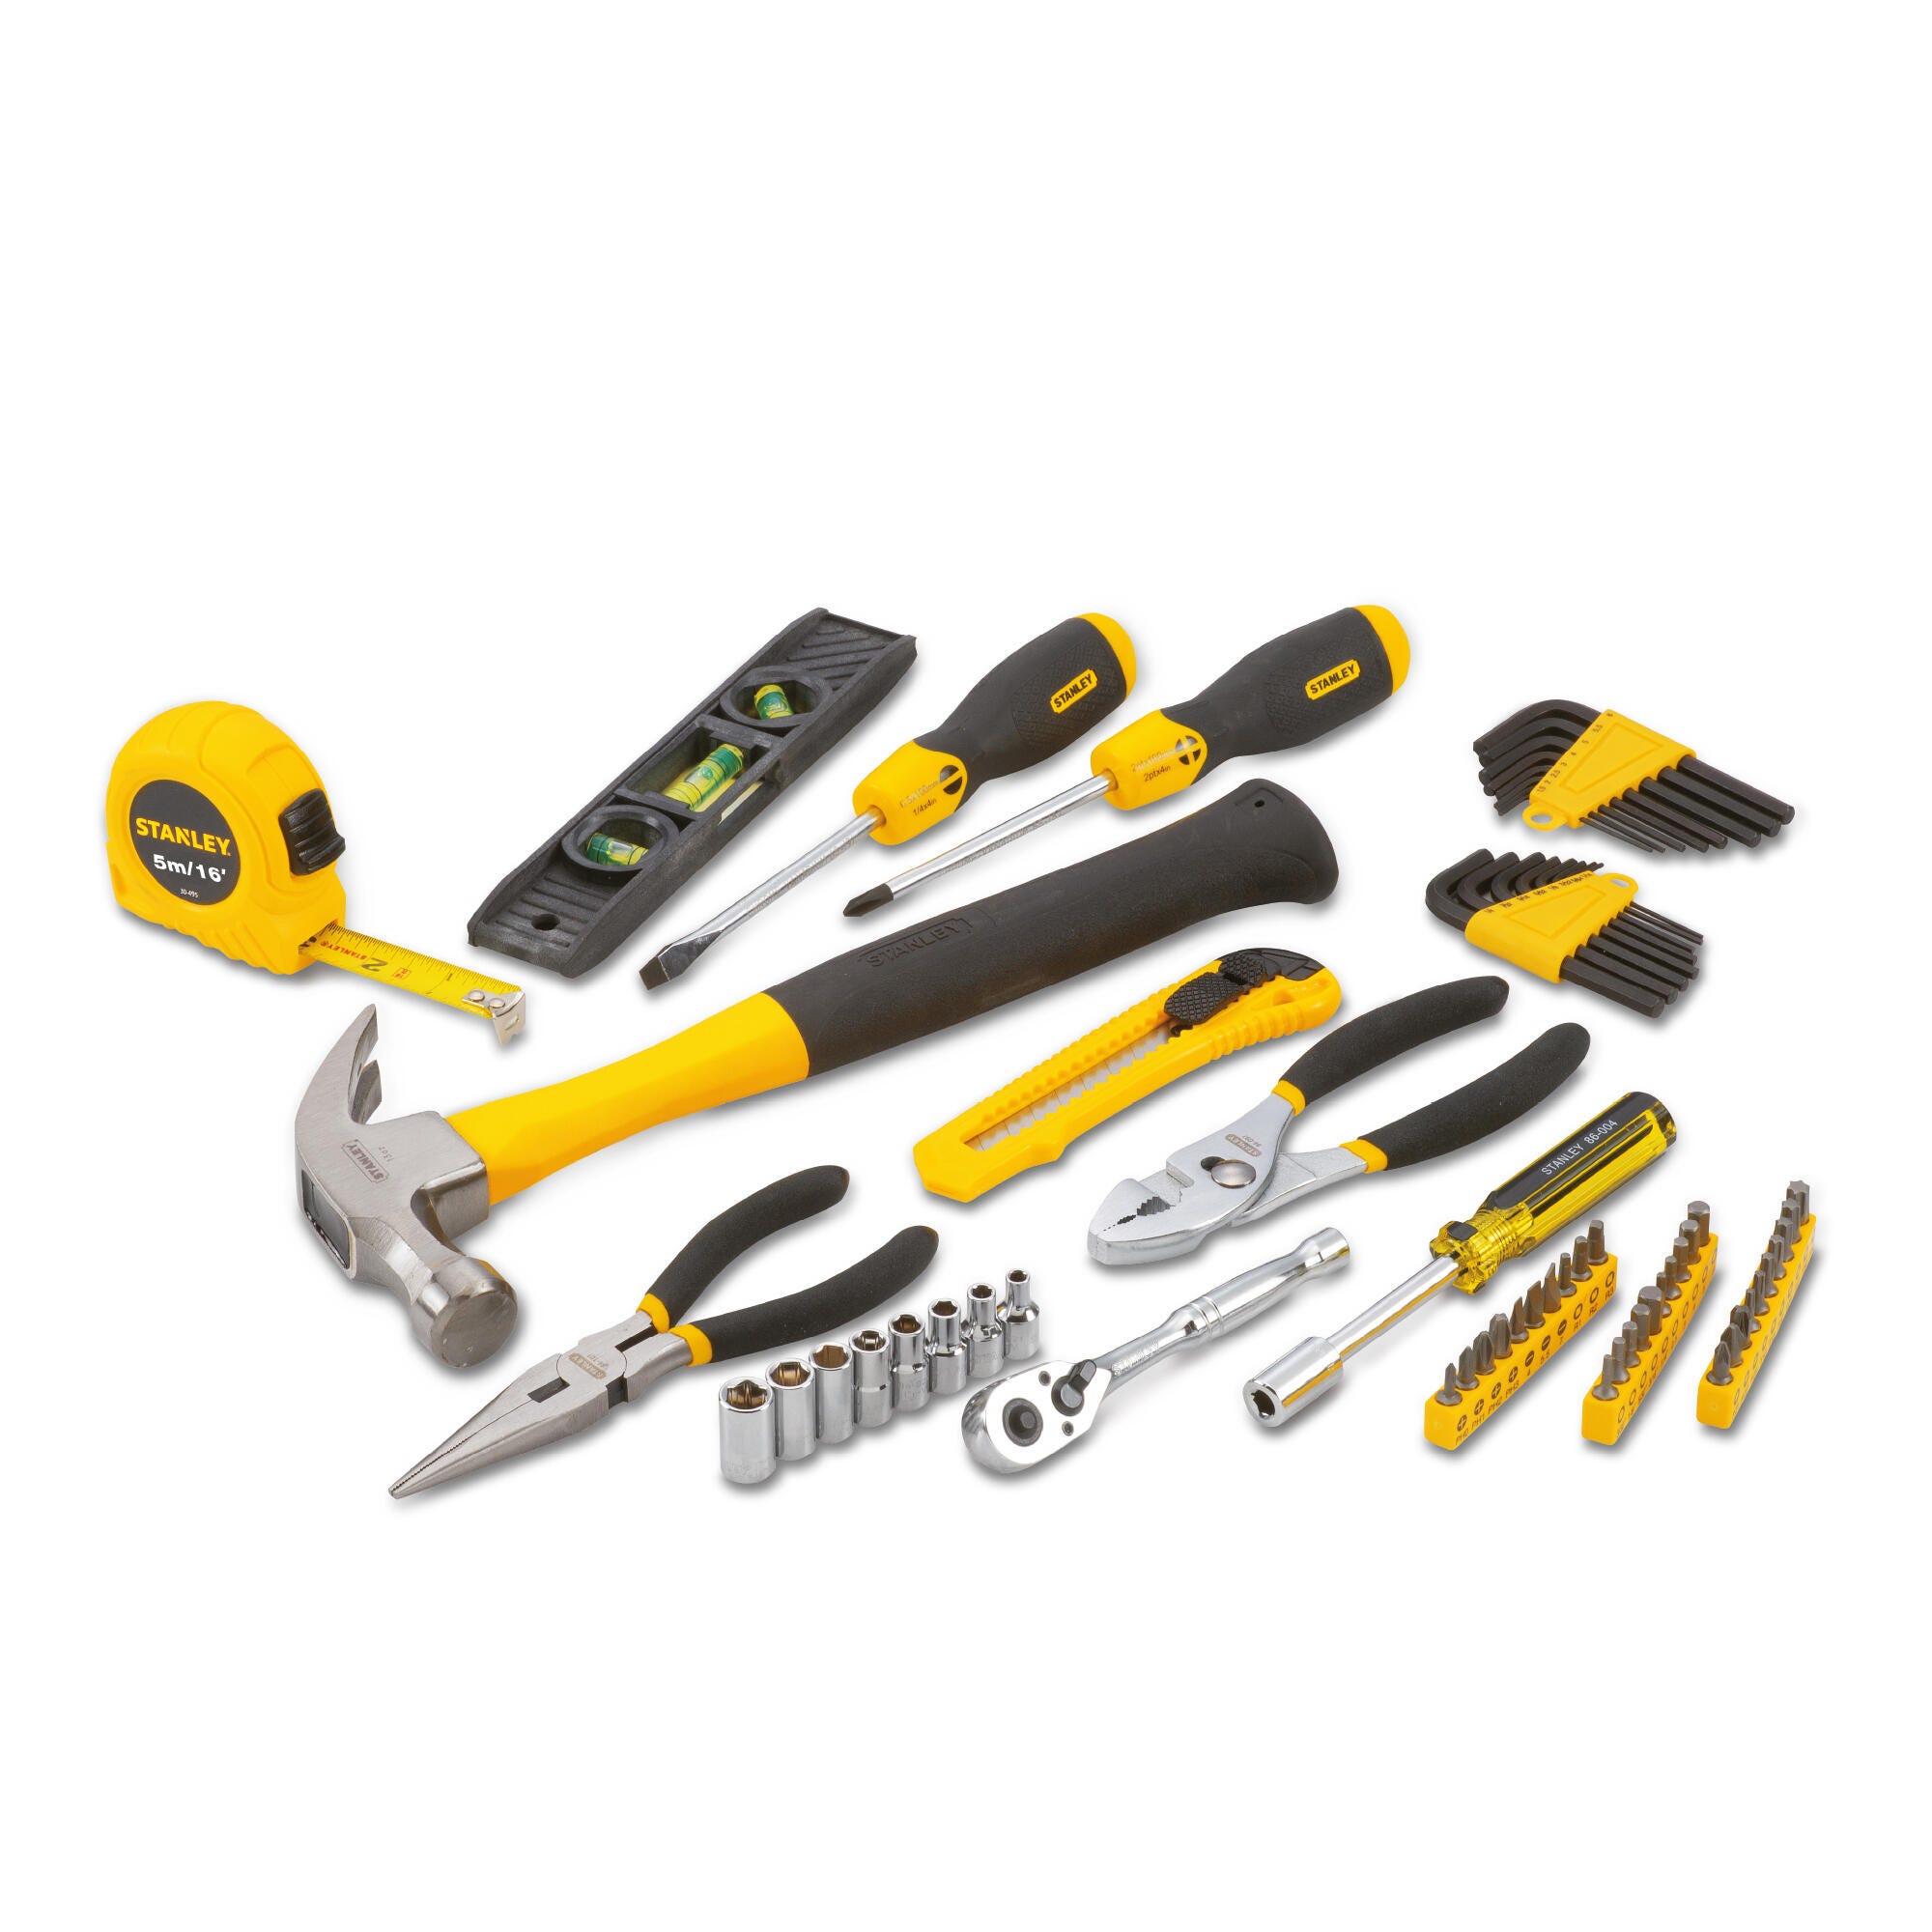 Set de herramientas manual Stanley de 65 piezas